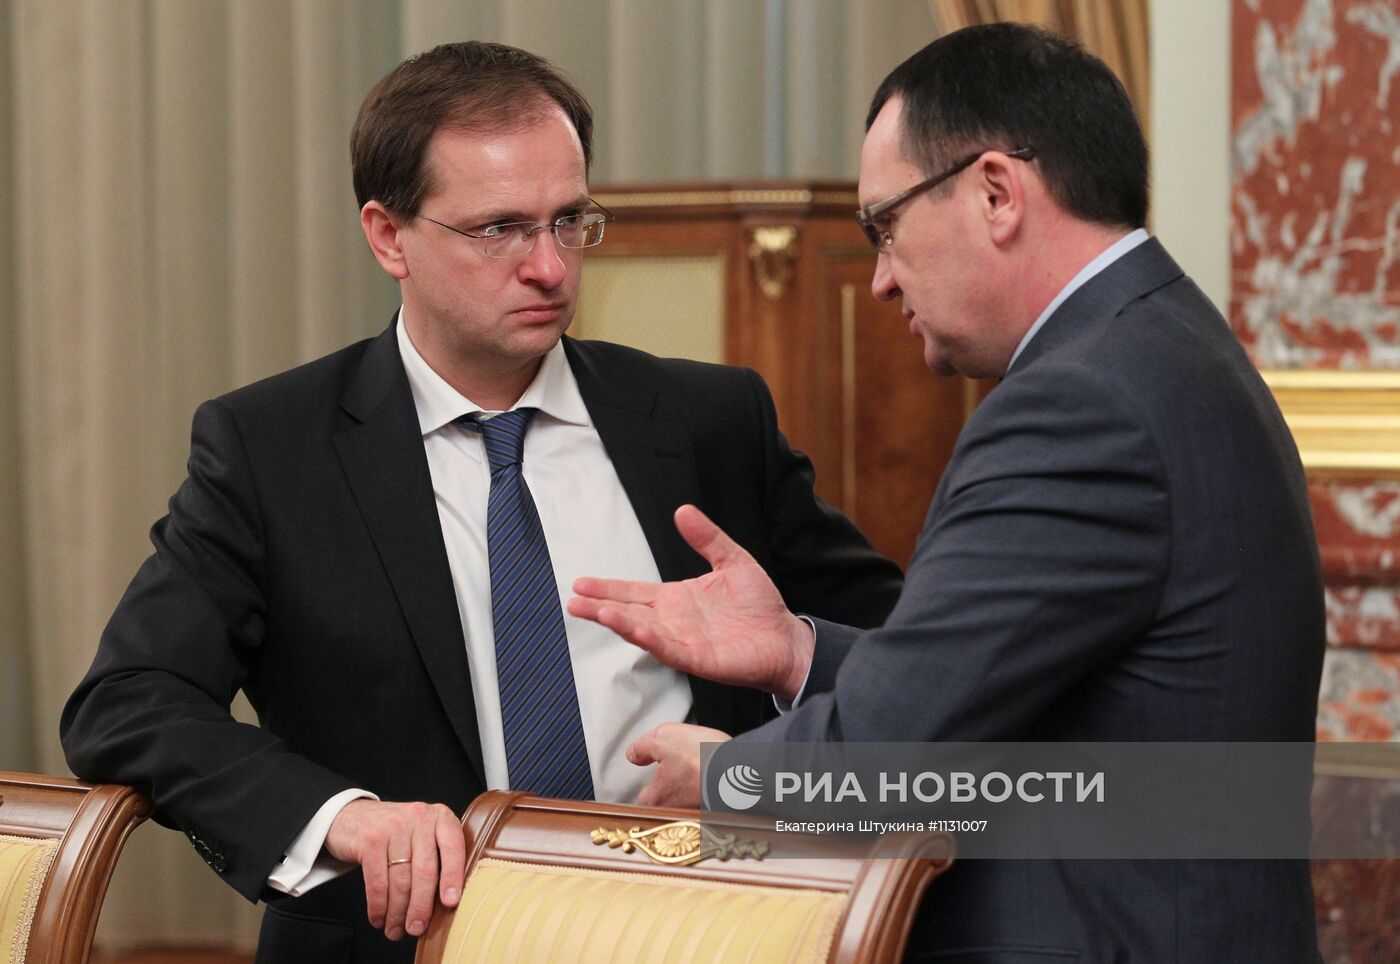 Д.Медведев провел первое заседание правительства 21 мая 2012 г.